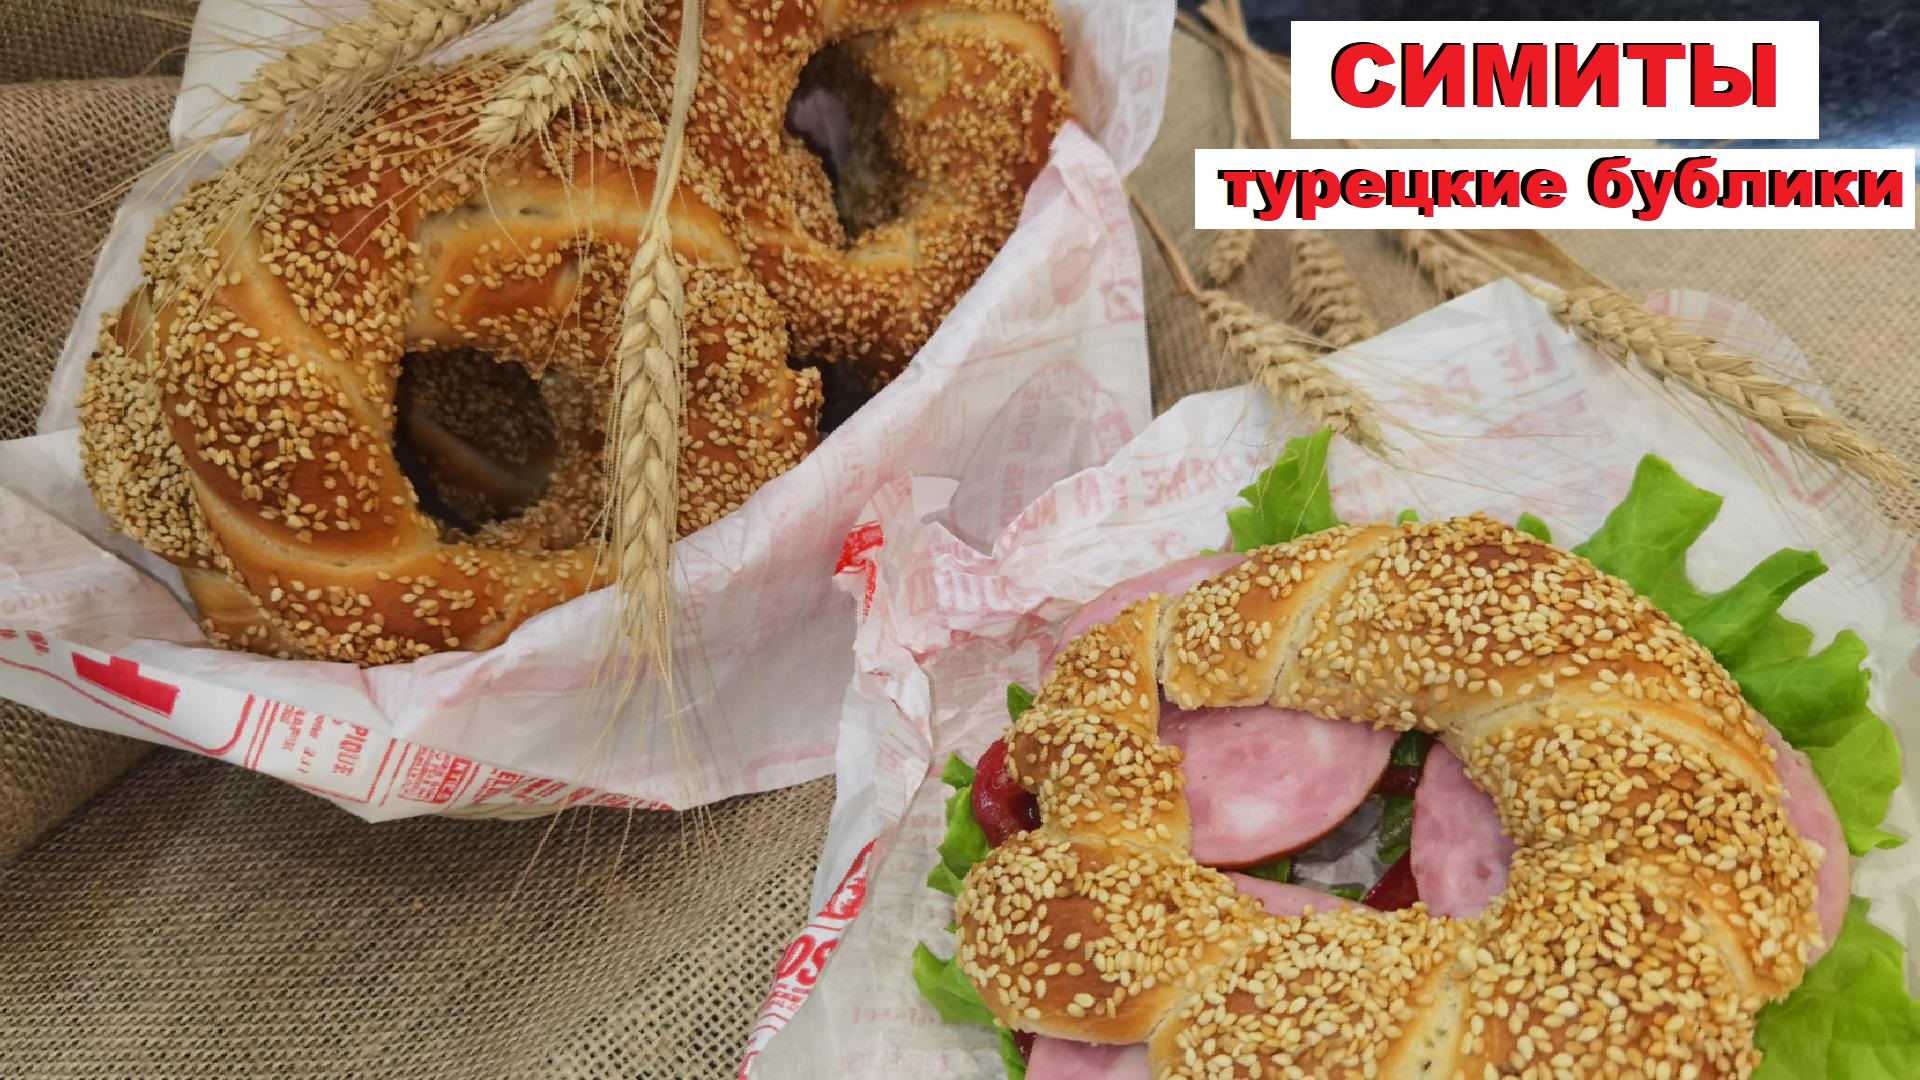 СИМИТЫ   Турецкие Бублики Простая выпечка / SIMITS or Turkish bagels